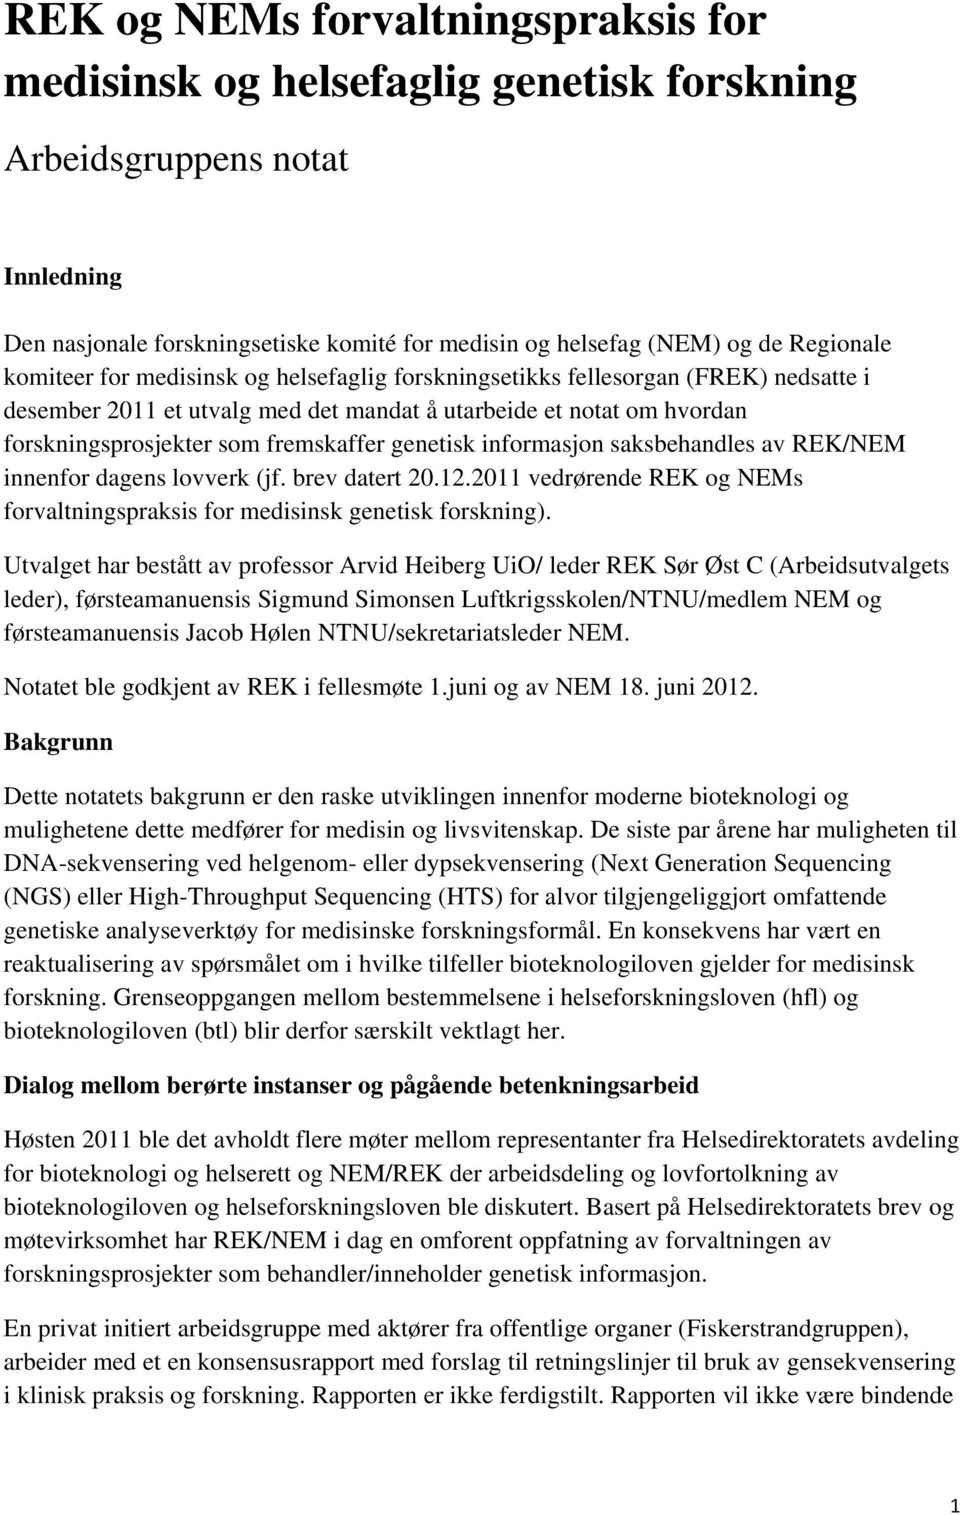 genetisk informasjon saksbehandles av REK/NEM innenfor dagens lovverk (jf. brev datert 20.12.2011 vedrørende REK og NEMs forvaltningspraksis for medisinsk genetisk forskning).